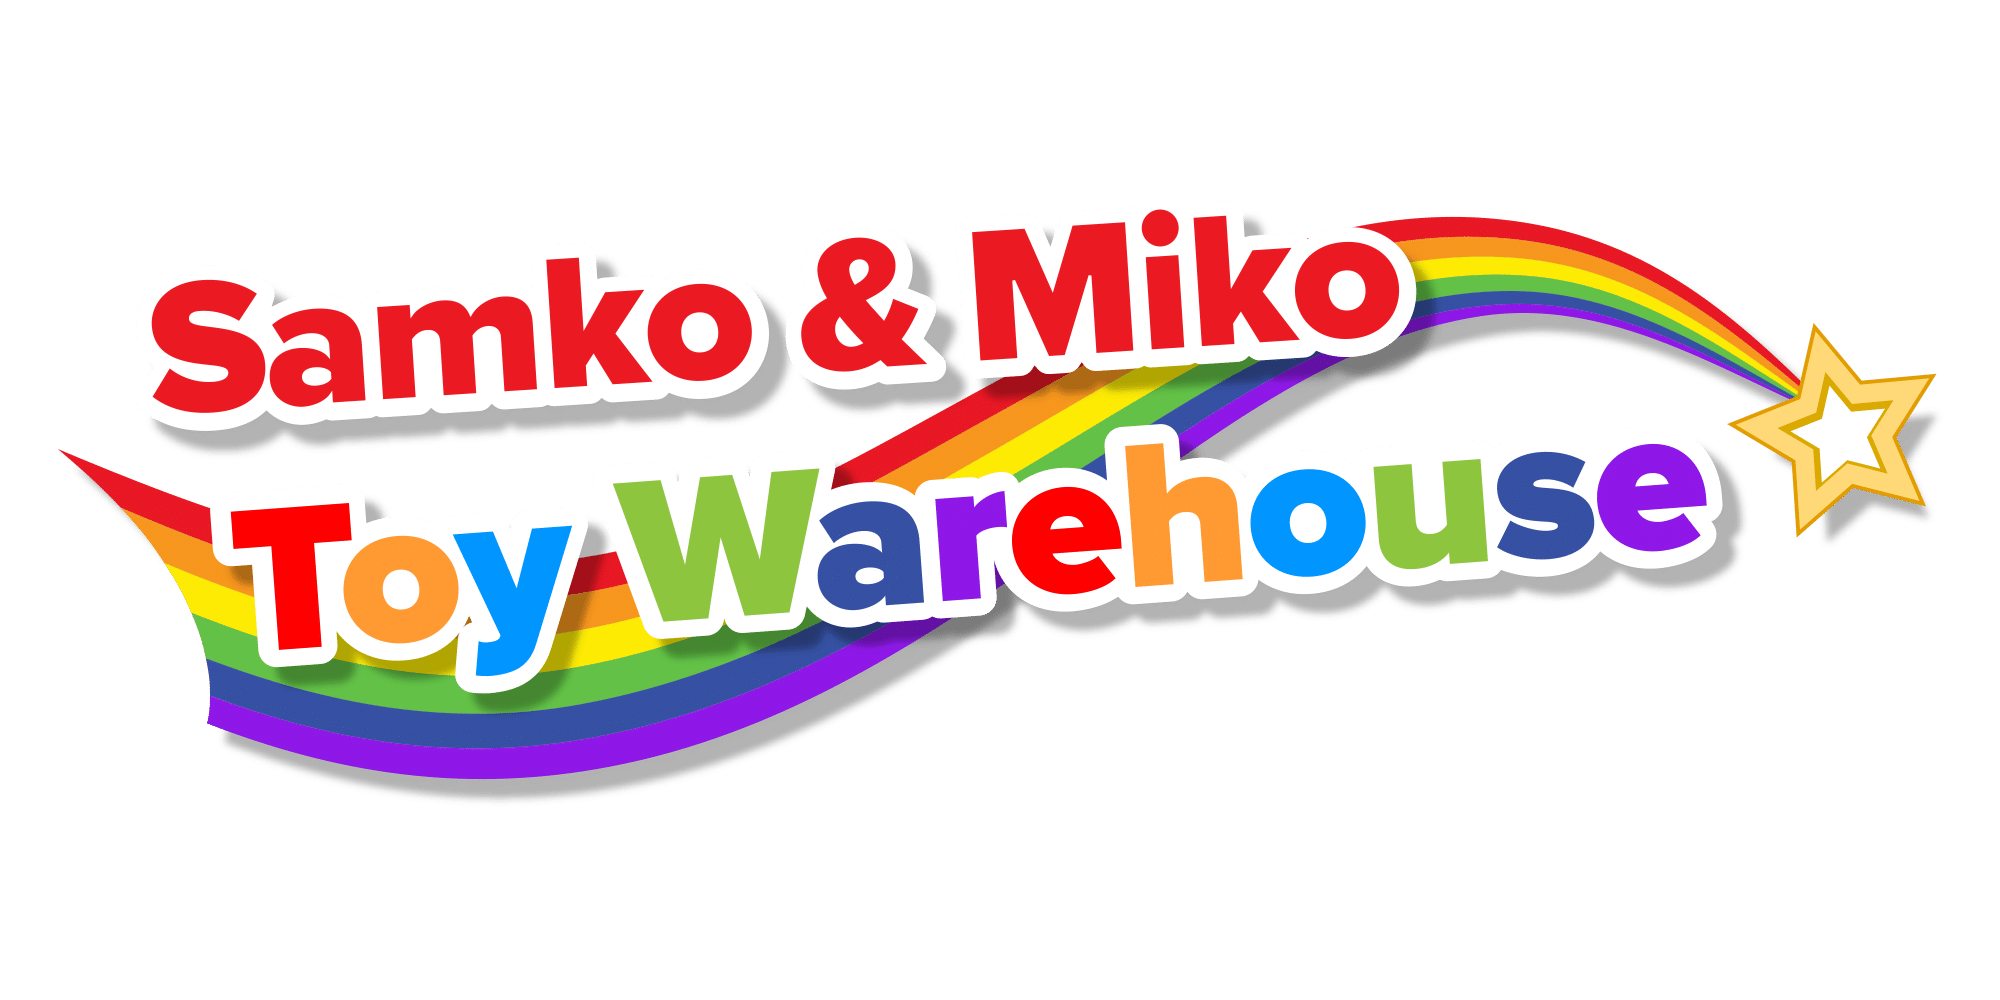 Samko \u0026 Miko Toy Warehouse